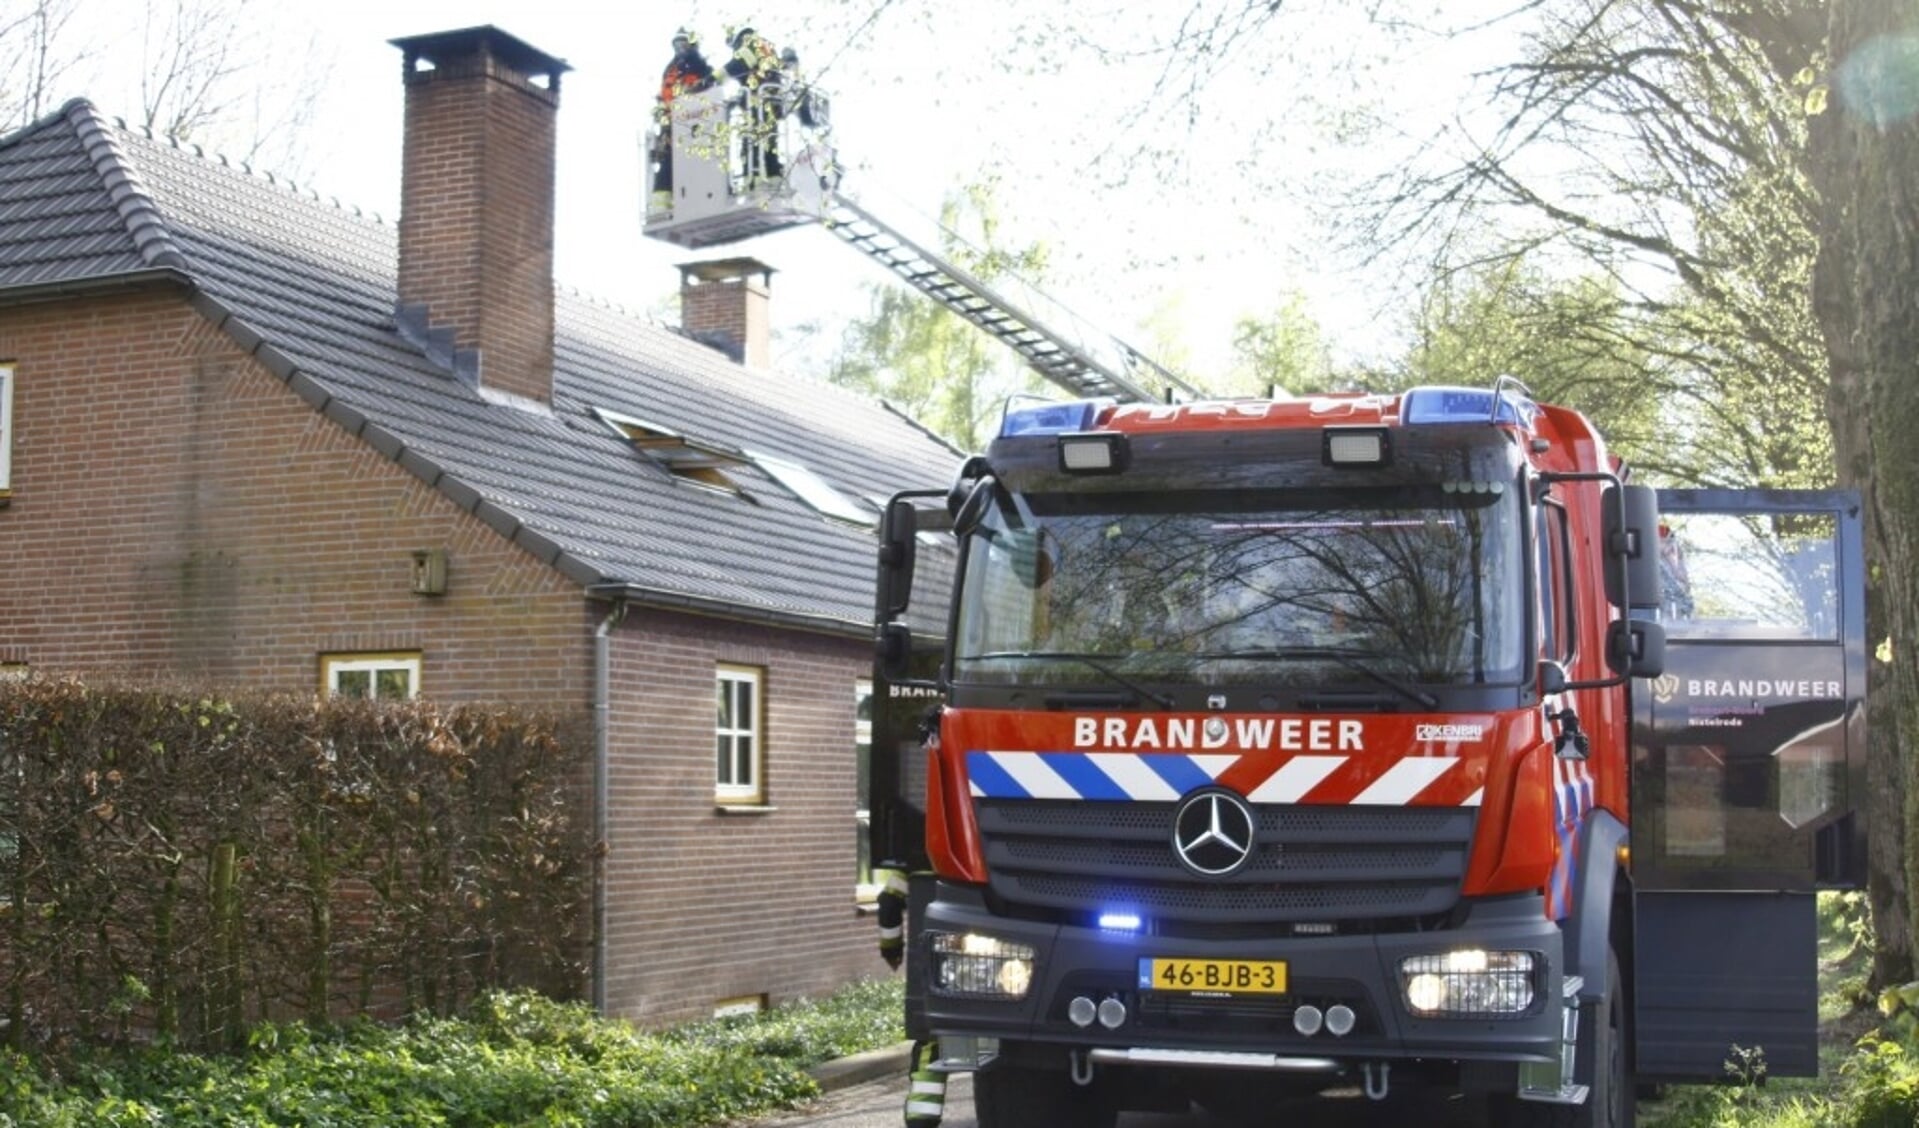 Fikse schoorsteenbrand zorgt voor inzet brandweer in Nistelrode